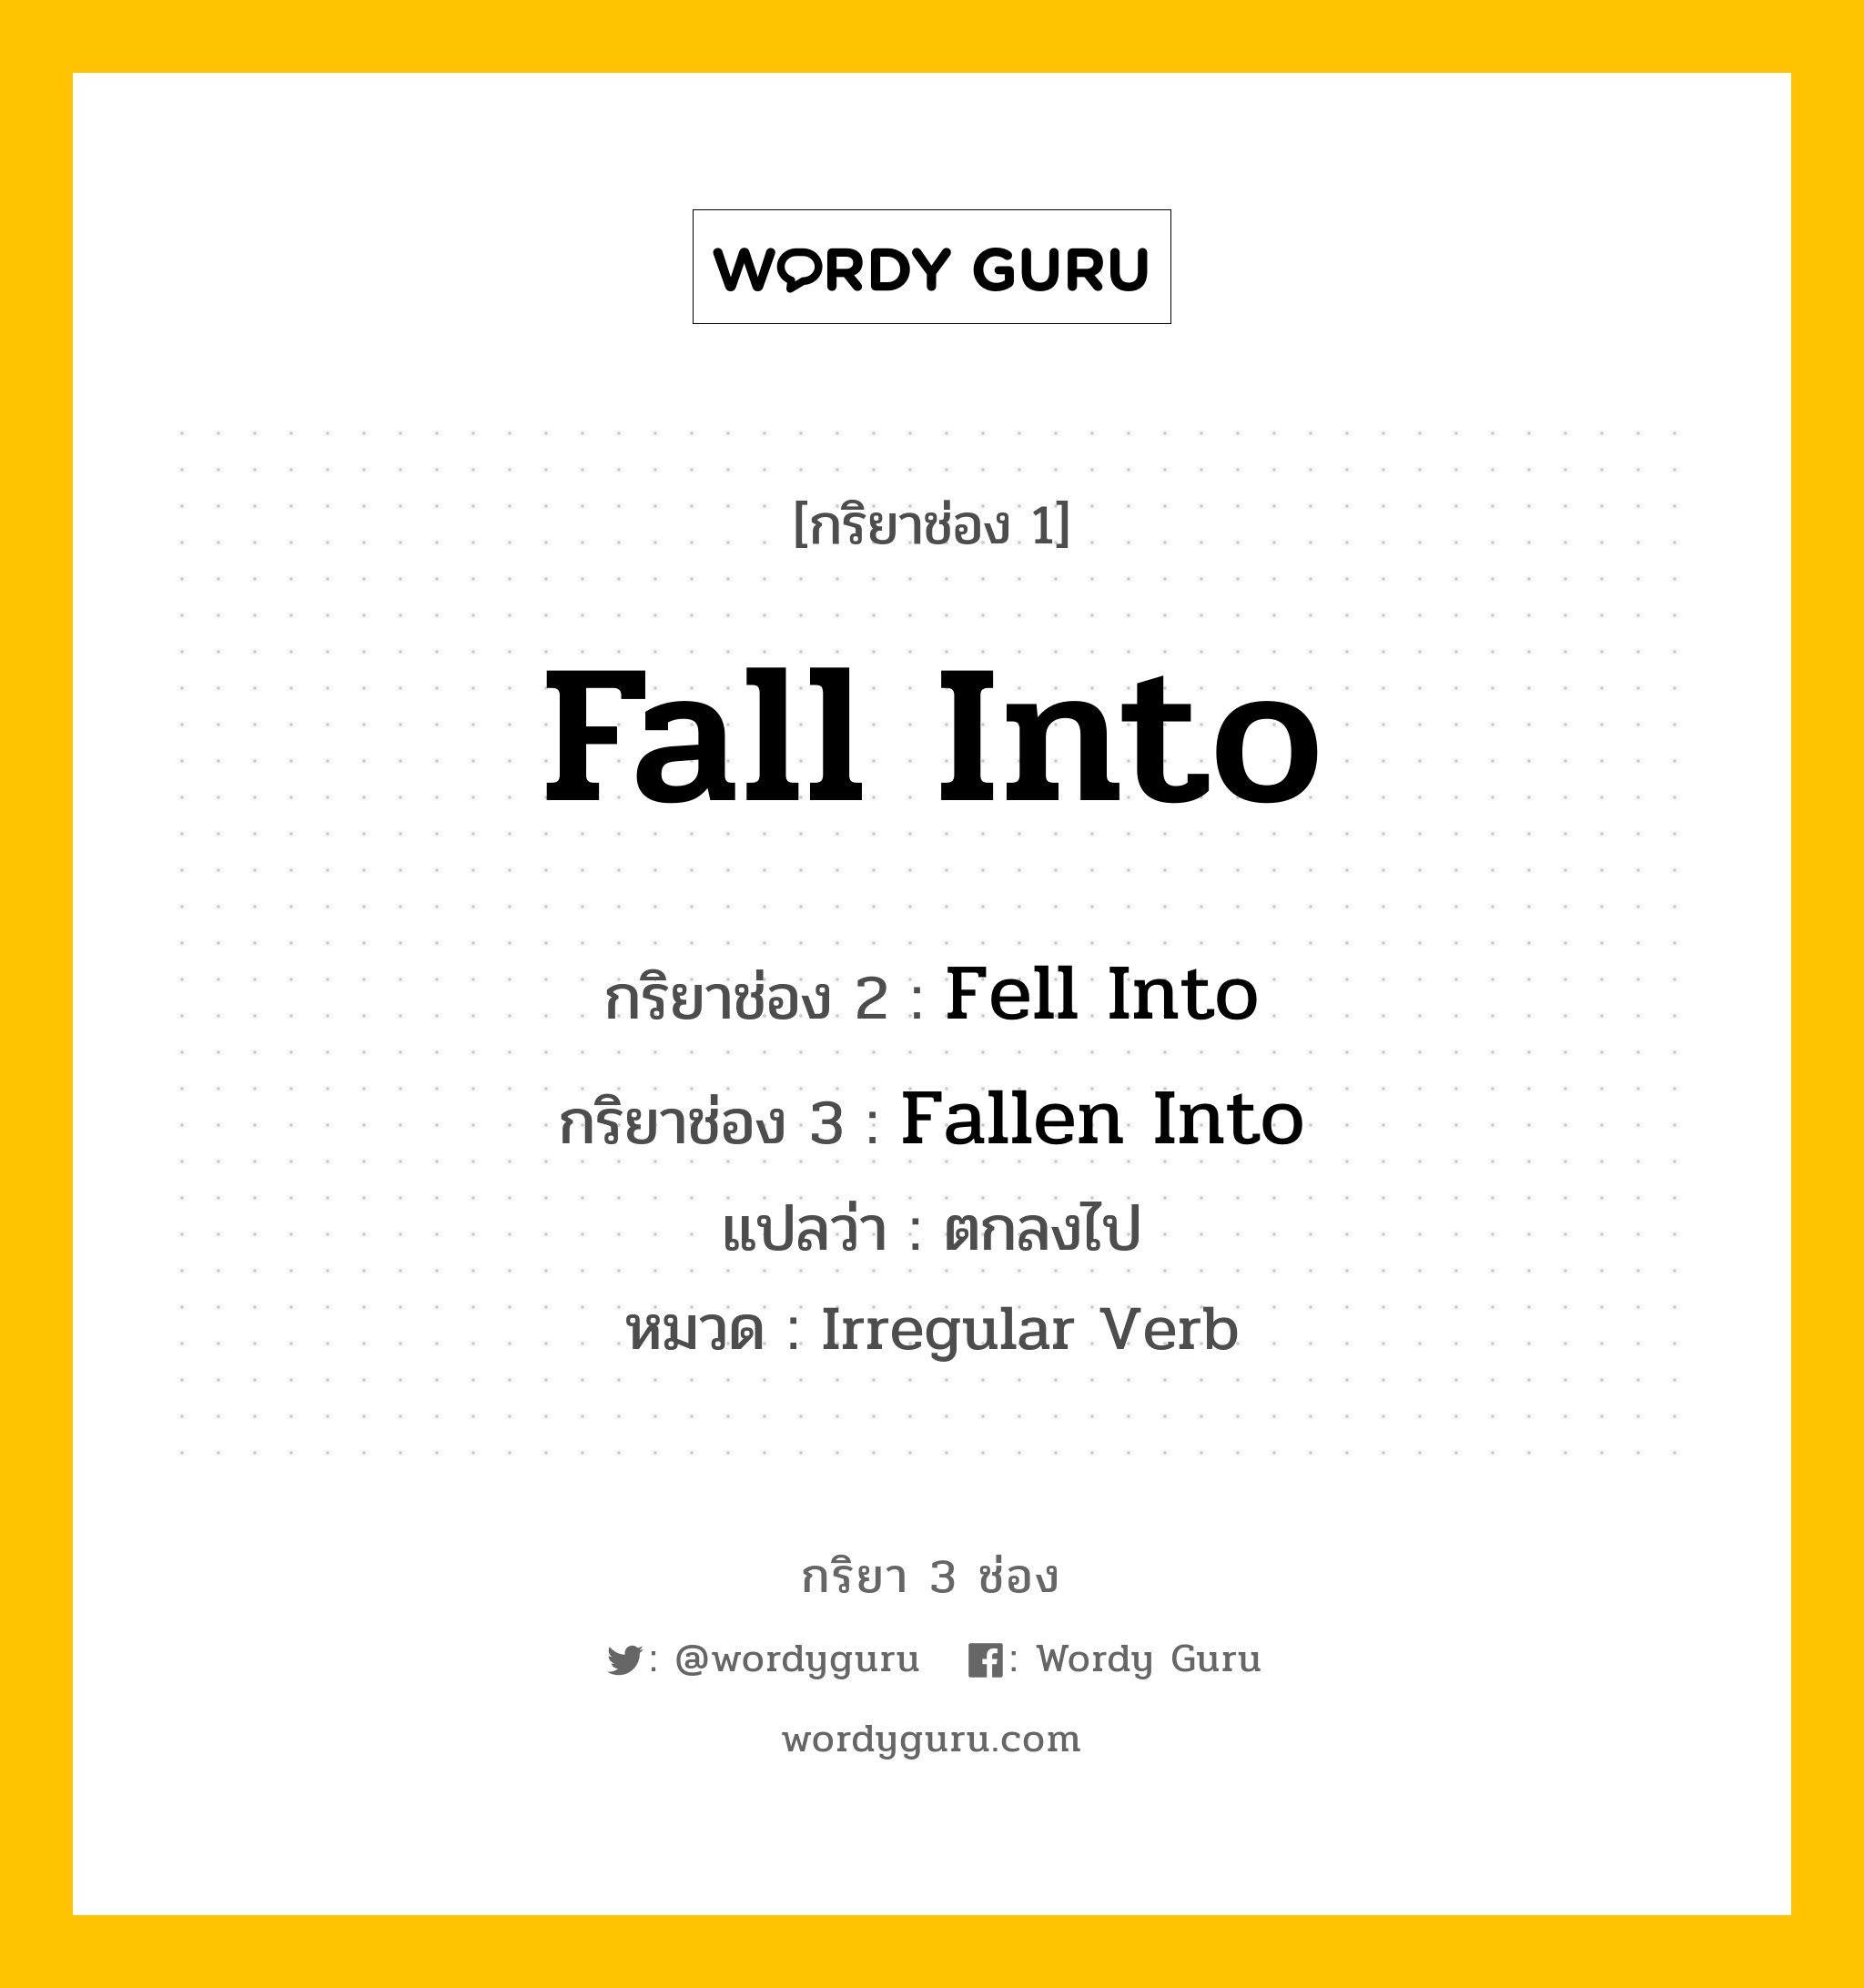 กริยา 3 ช่อง ของ Fall Into คืออะไร? มาดูคำอ่าน คำแปลกันเลย, กริยาช่อง 1 Fall Into กริยาช่อง 2 Fell Into กริยาช่อง 3 Fallen Into แปลว่า ตกลงไป หมวด Irregular Verb หมวด Irregular Verb